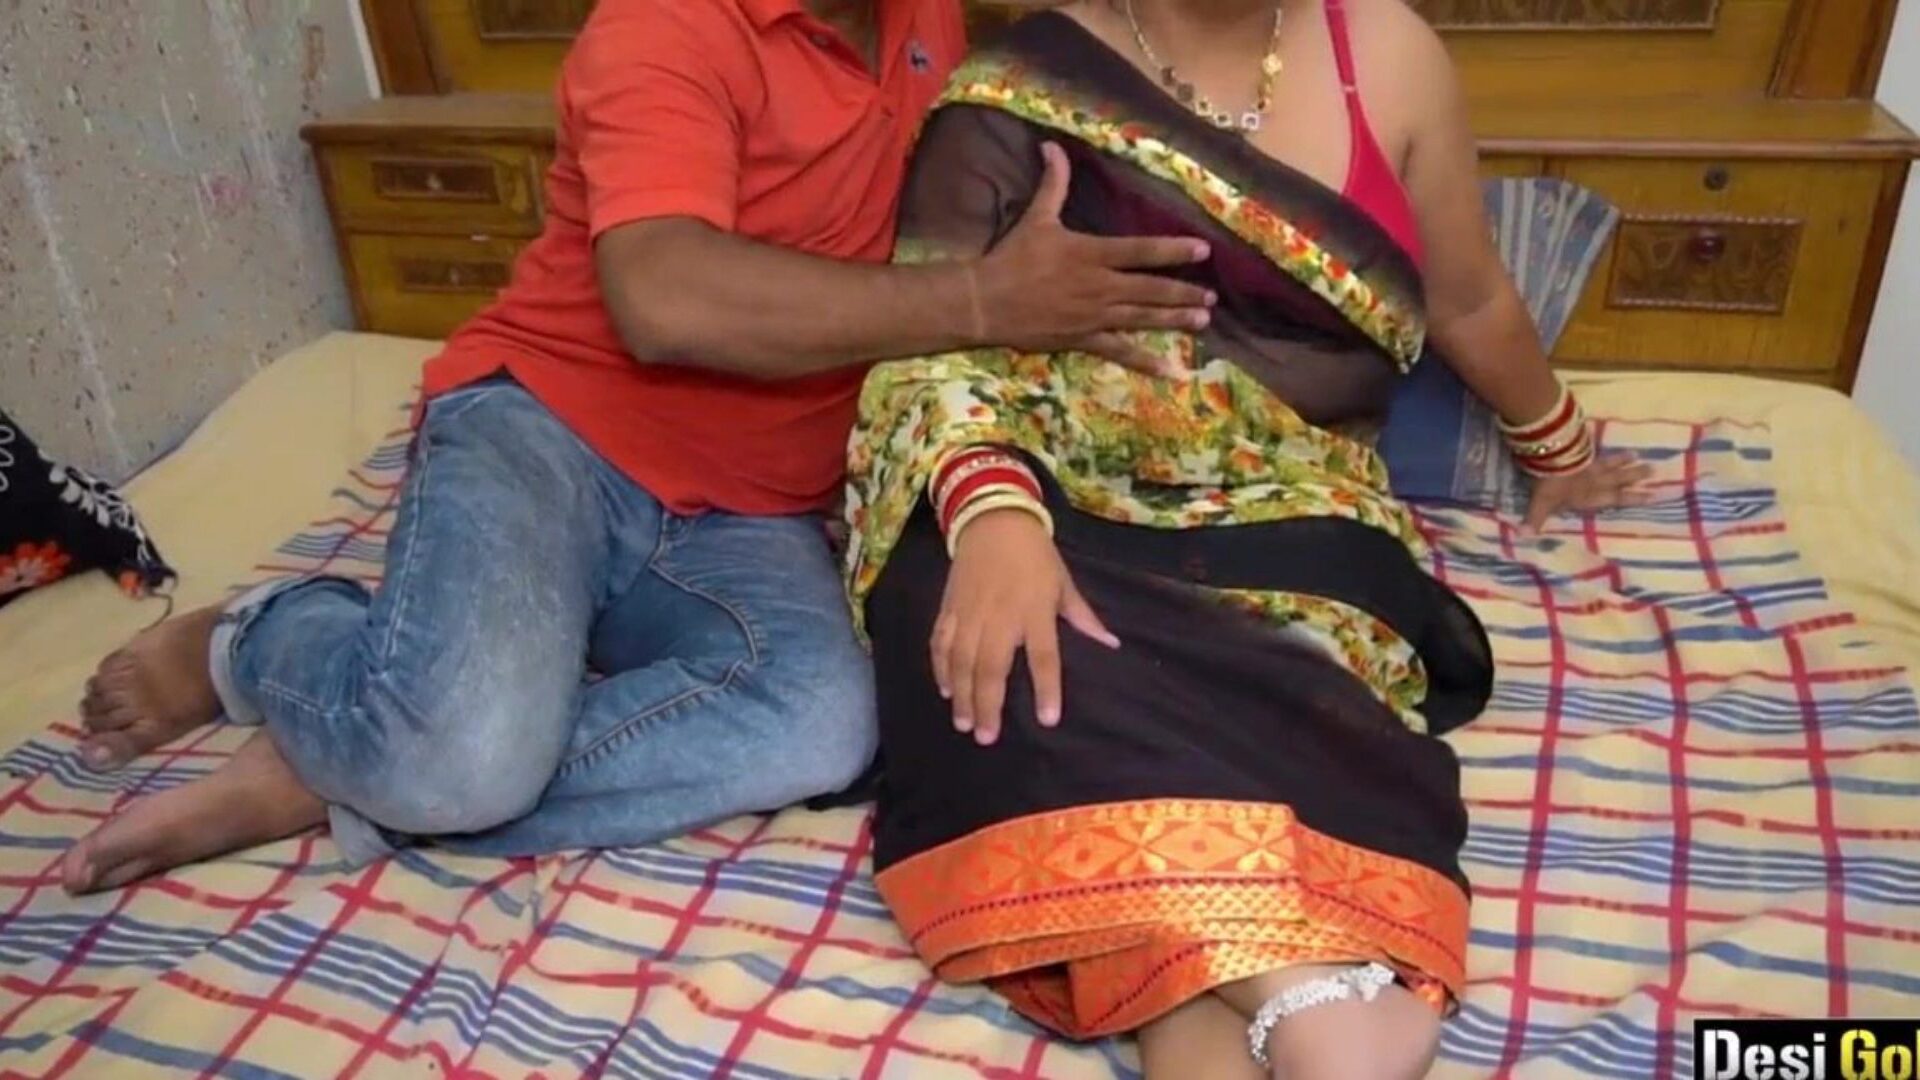 indyjska żona uprawia seks z przyjacielem męża